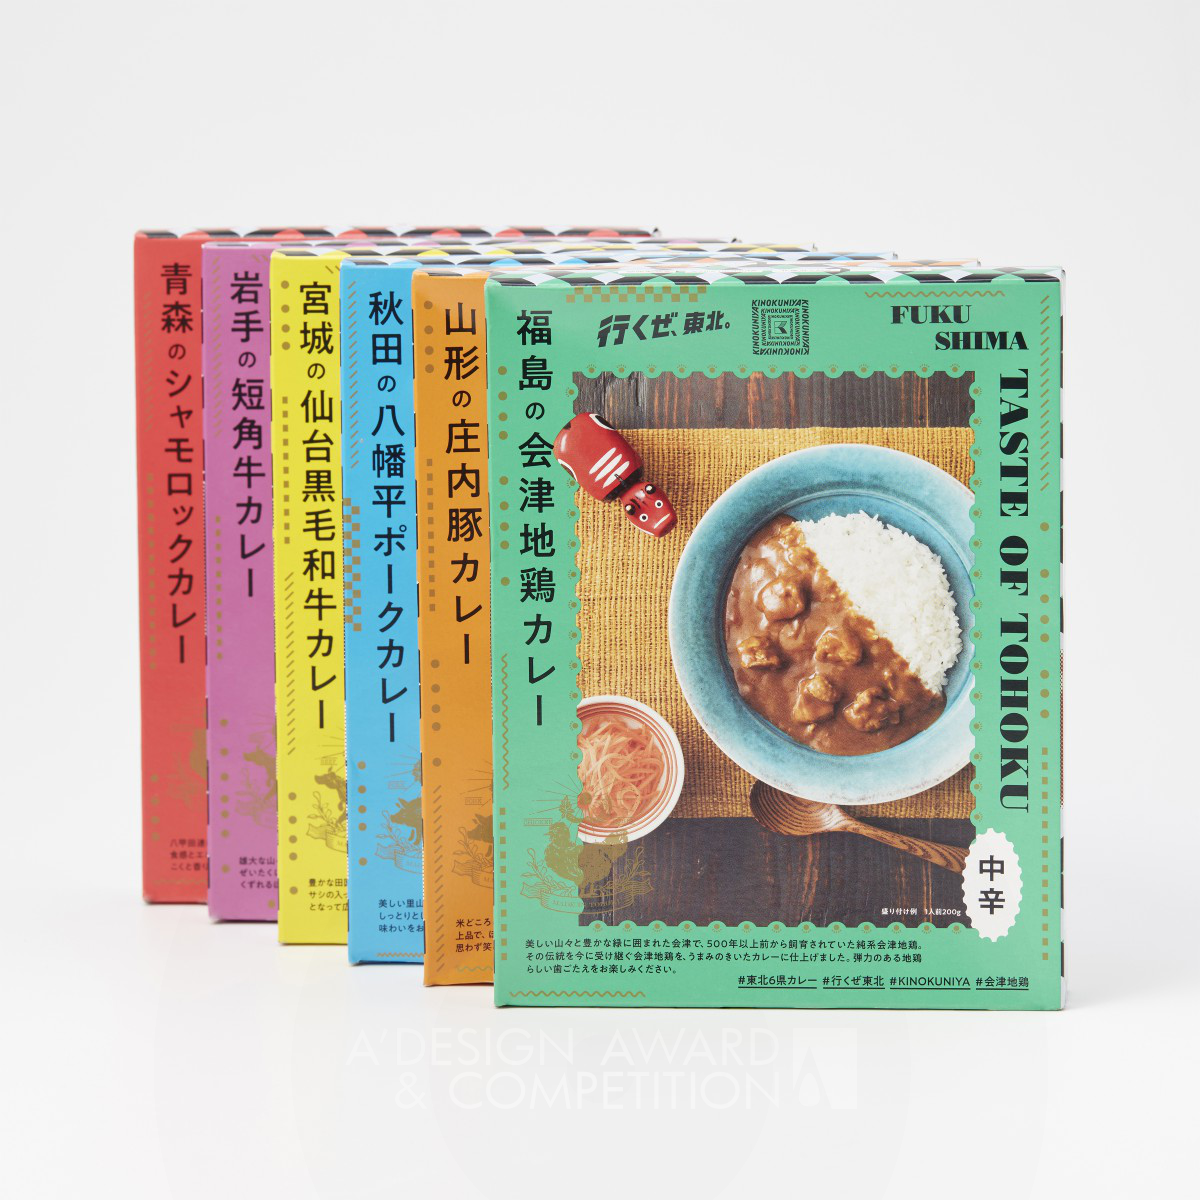 Taste of Tohoku Packaging by Dodo Design Co., Ltd.